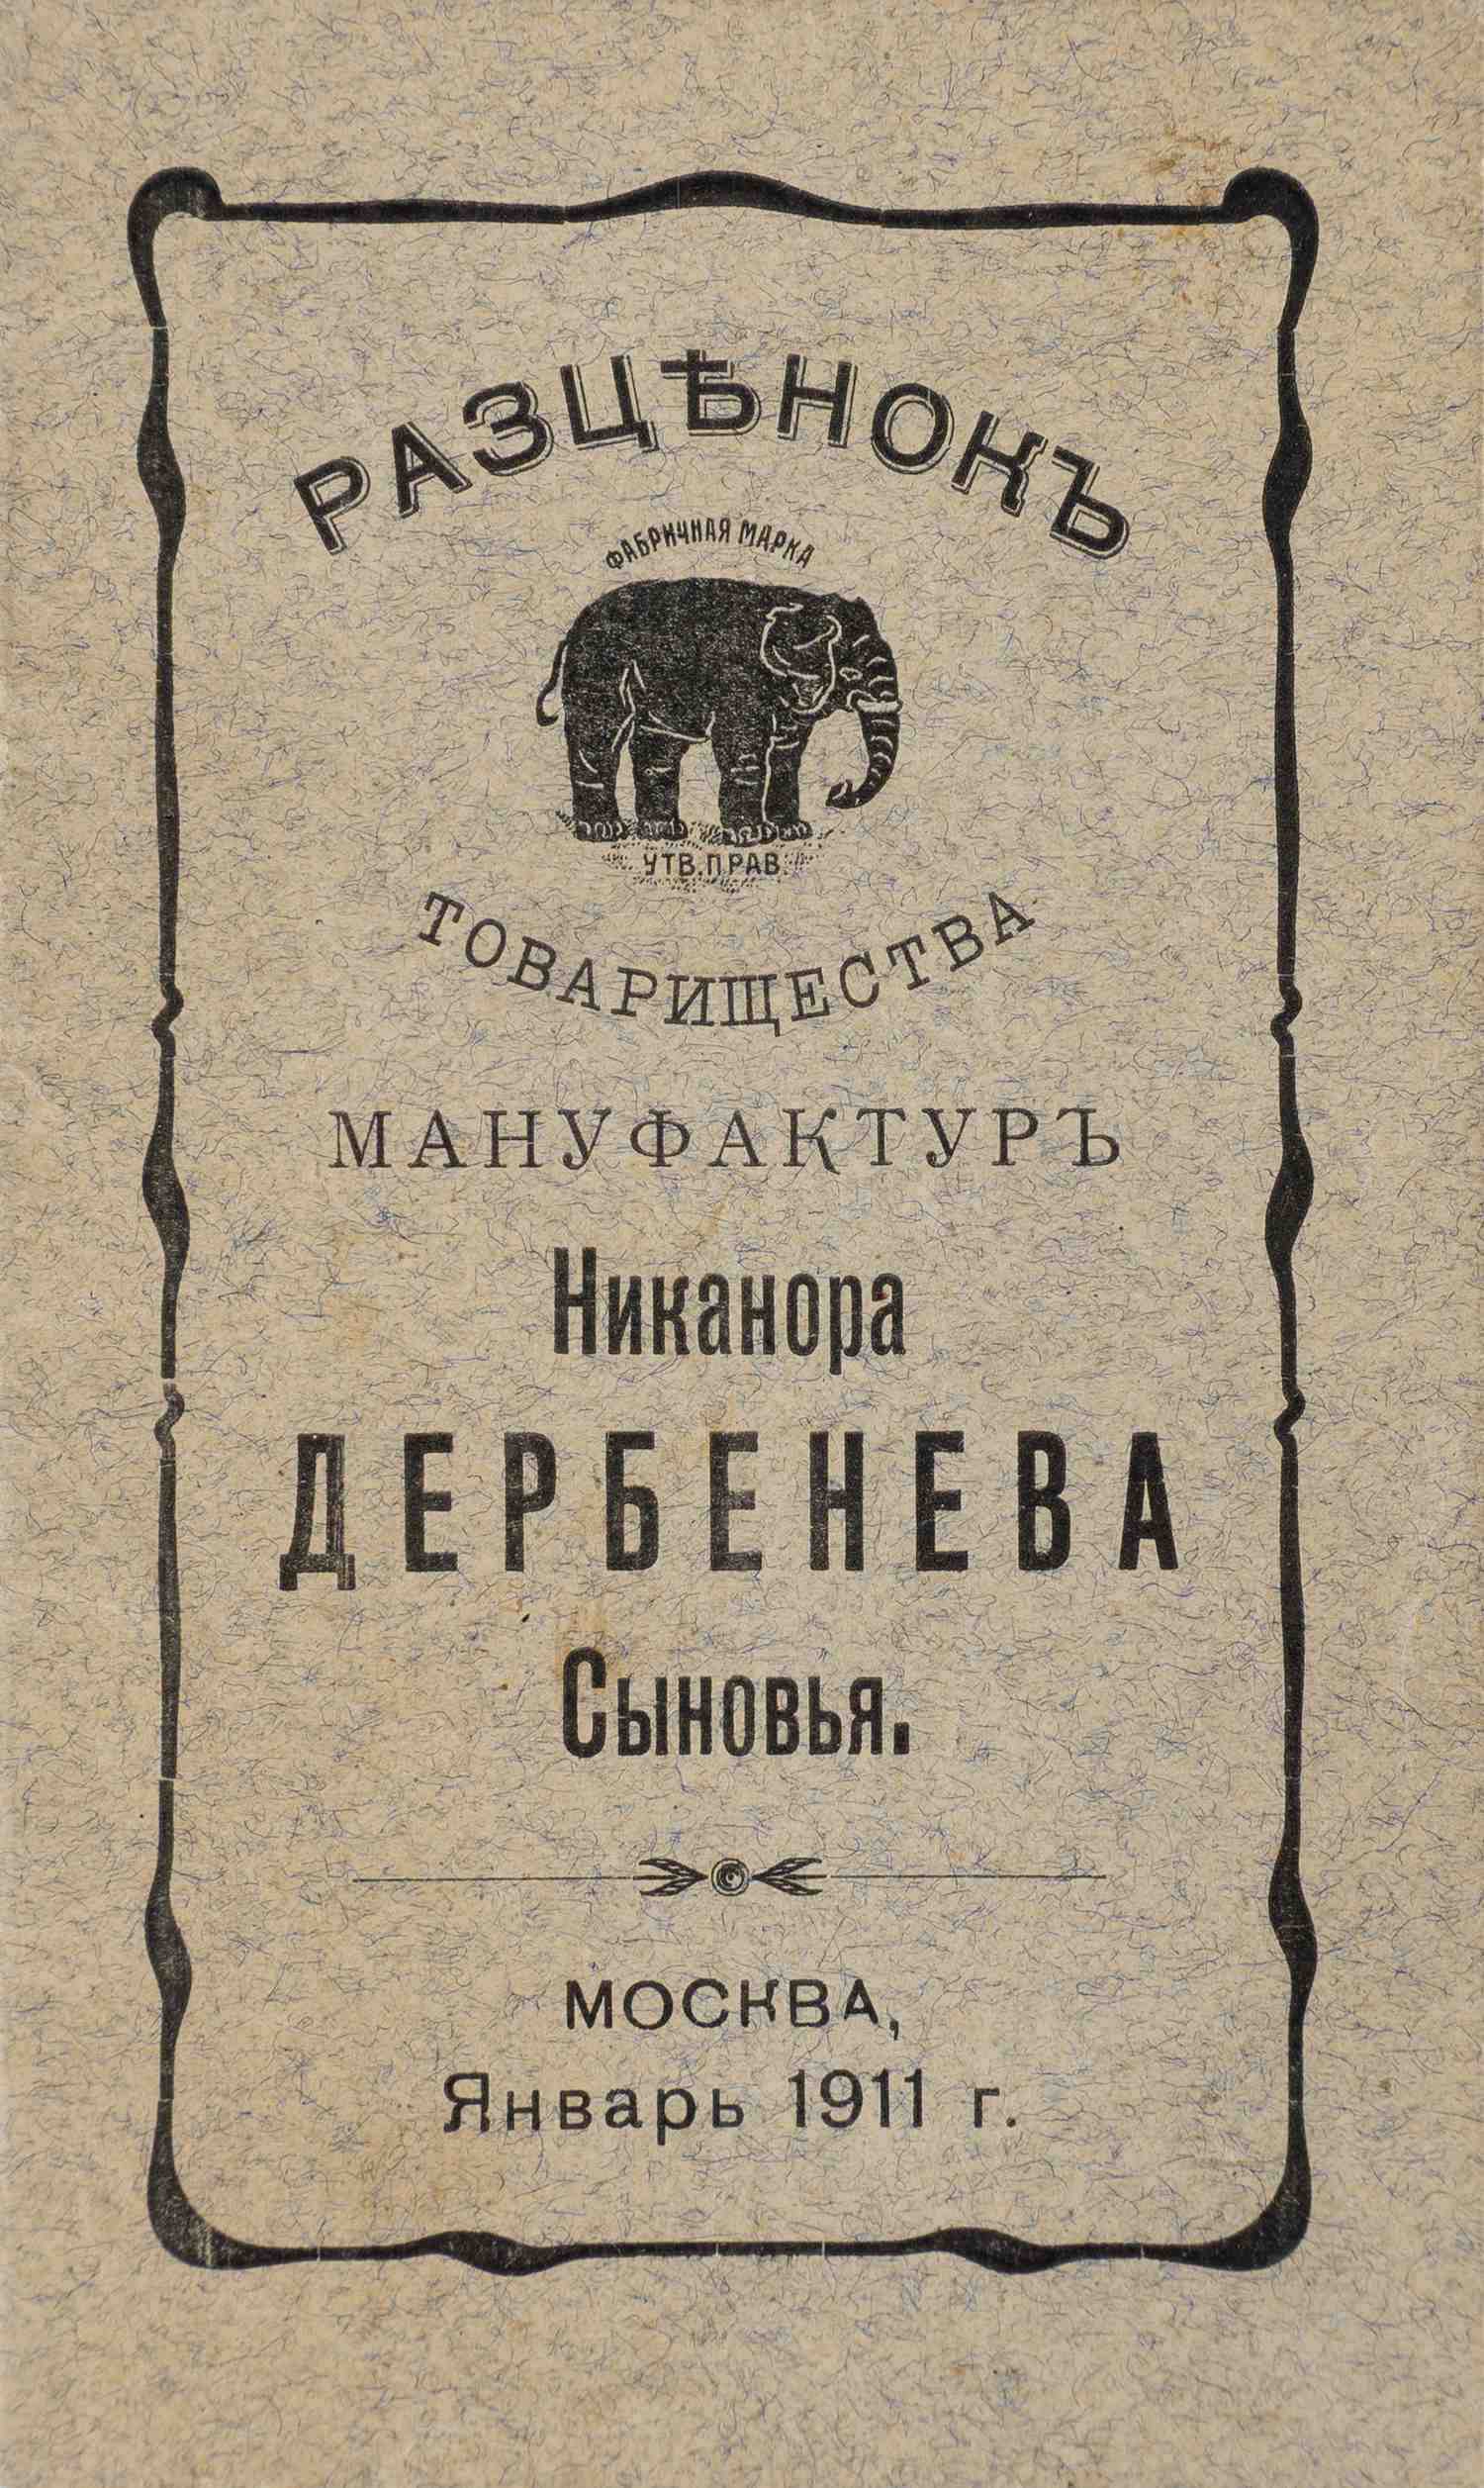 Разценок товарищества мануфактур Никанора Дербенева Сыновья. Москва, январь 1911 года.